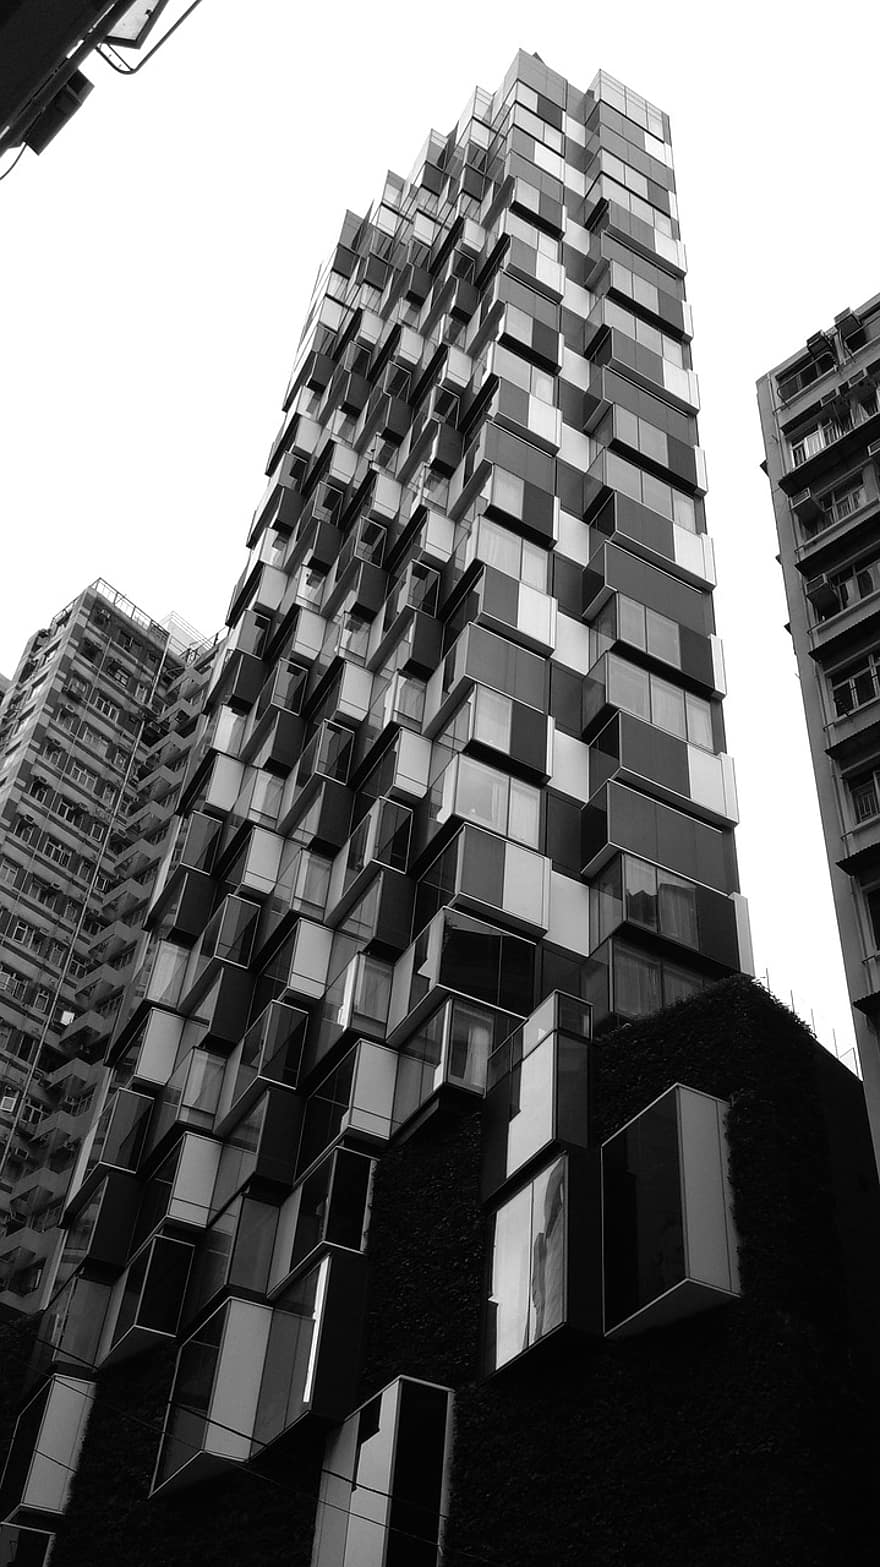 costruzione, architettura, Hong Kong, urbano, condominio, Casa, moderno, casa, città